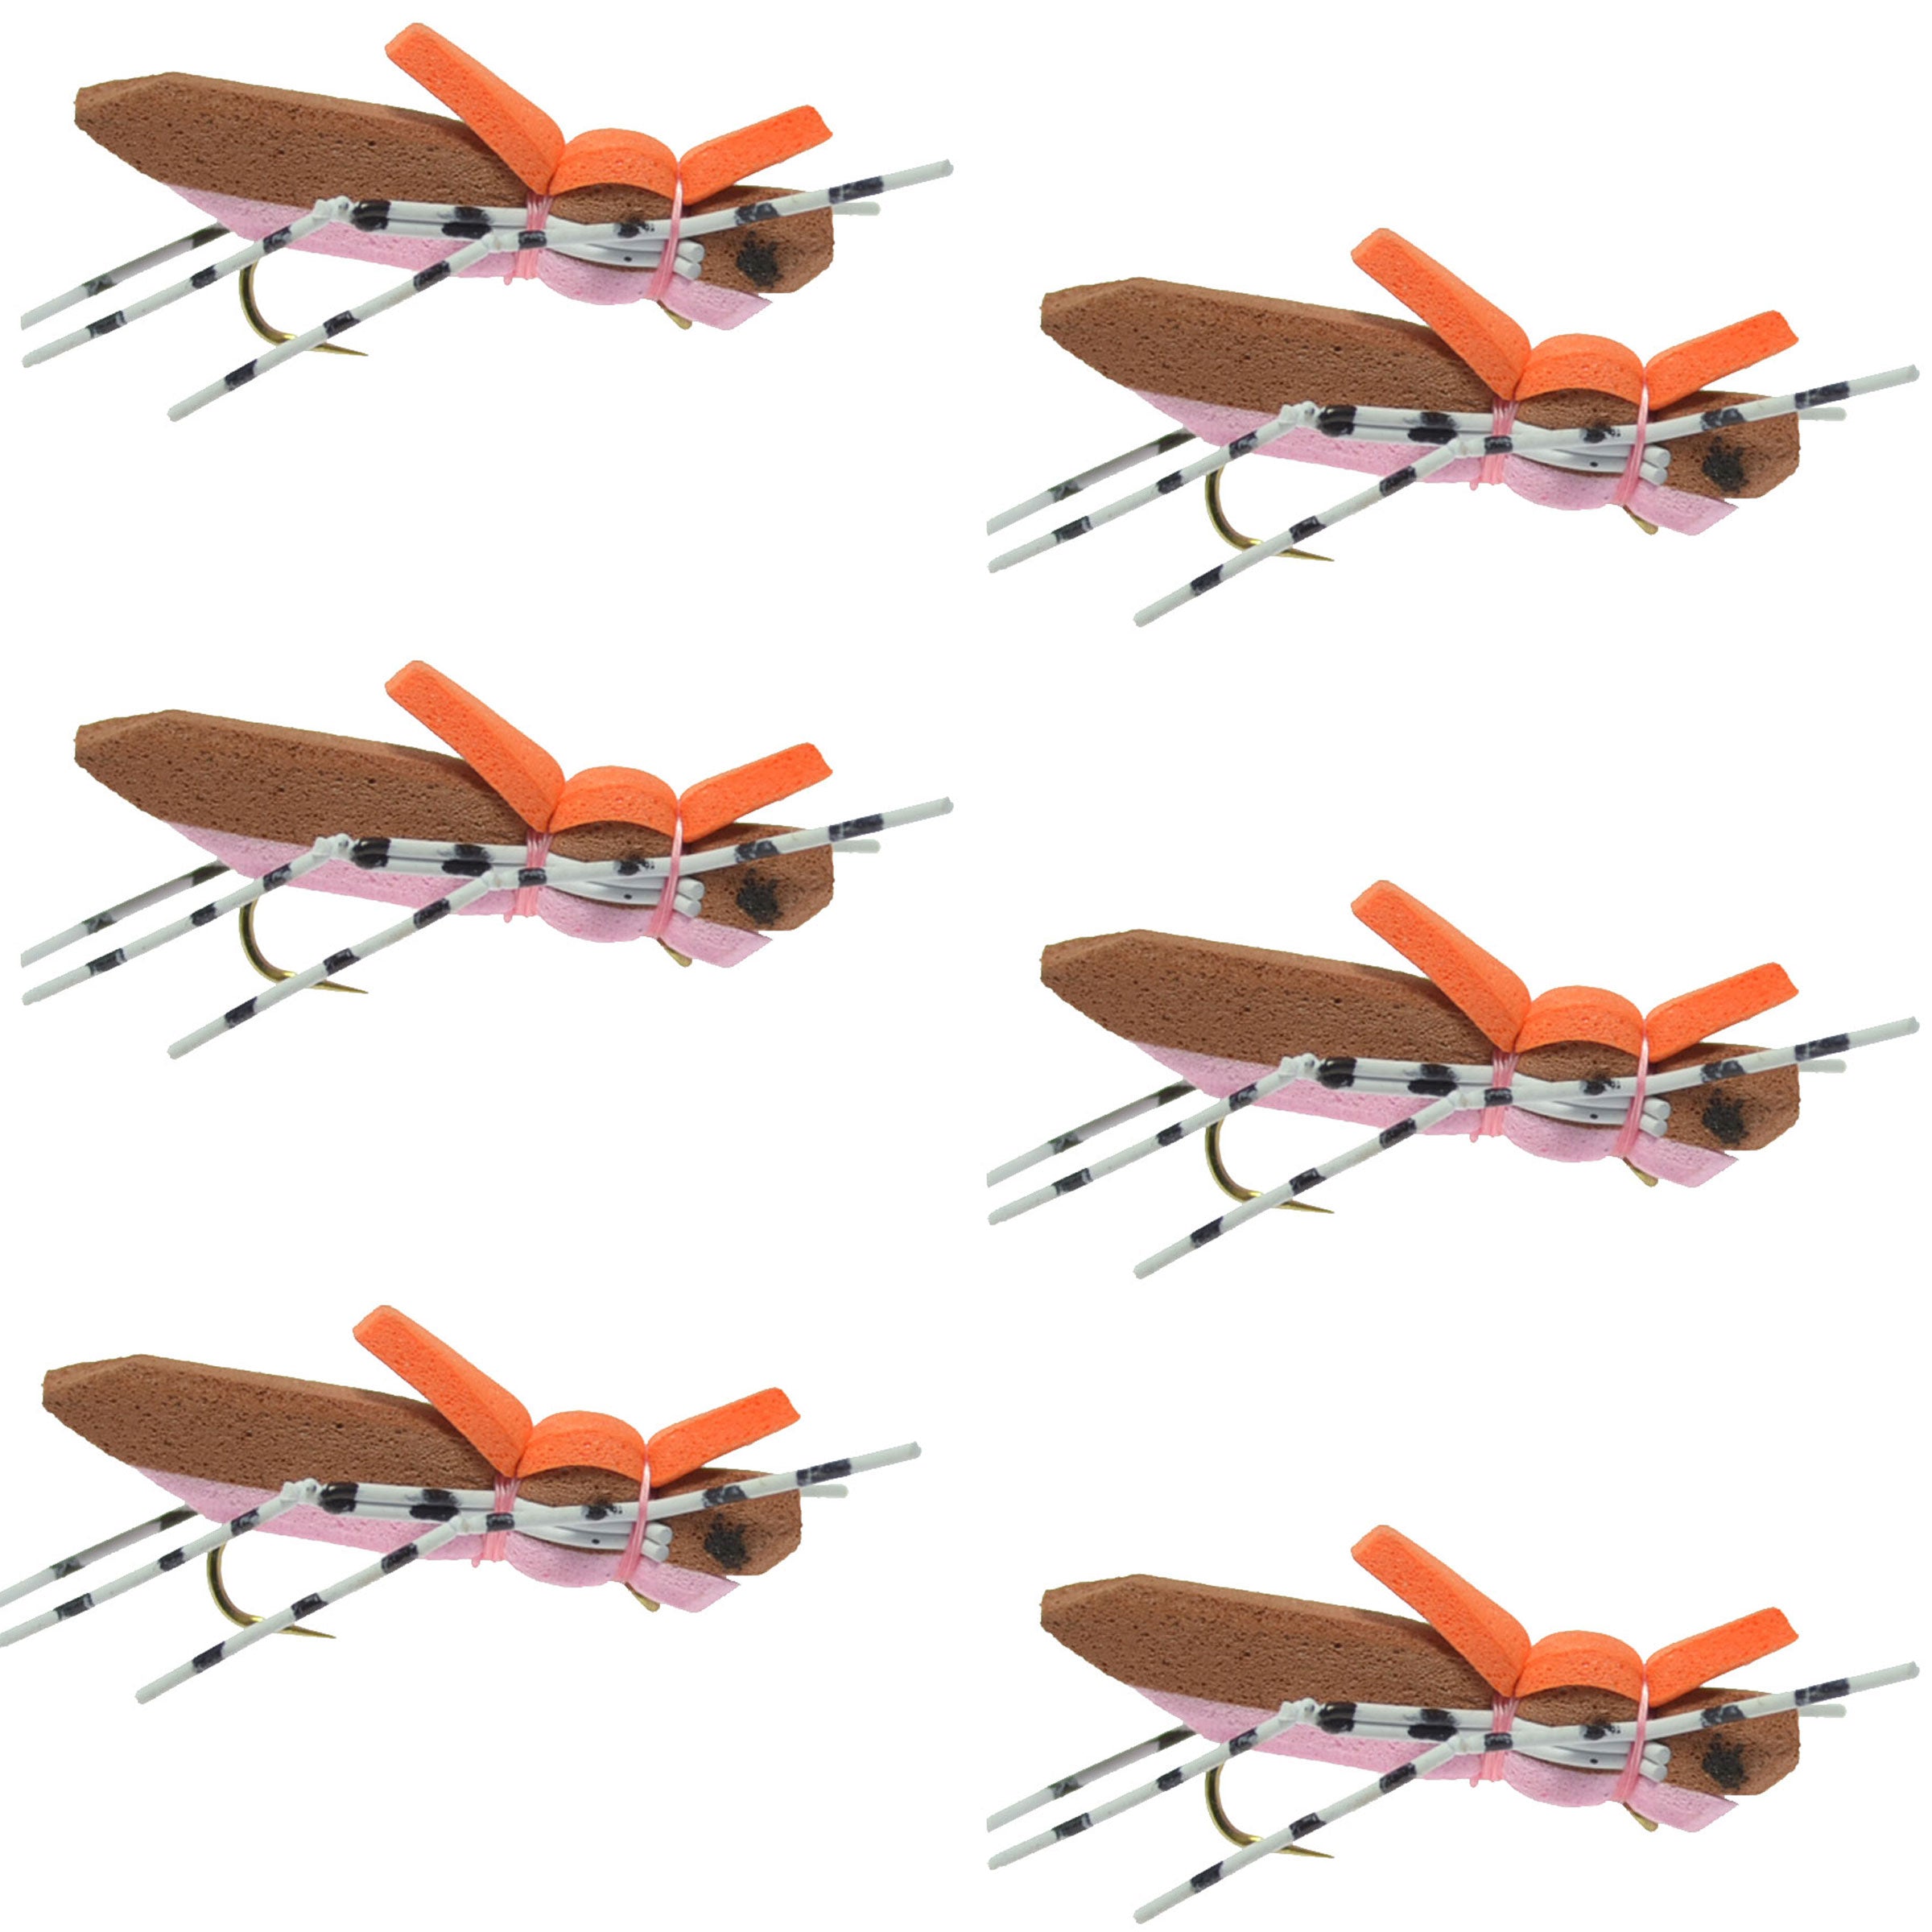 Moorish Hopper - Mosca de saltamontes con cuerpo de espuma, color marrón y rosa, 6 moscas, tamaño de anzuelo 10